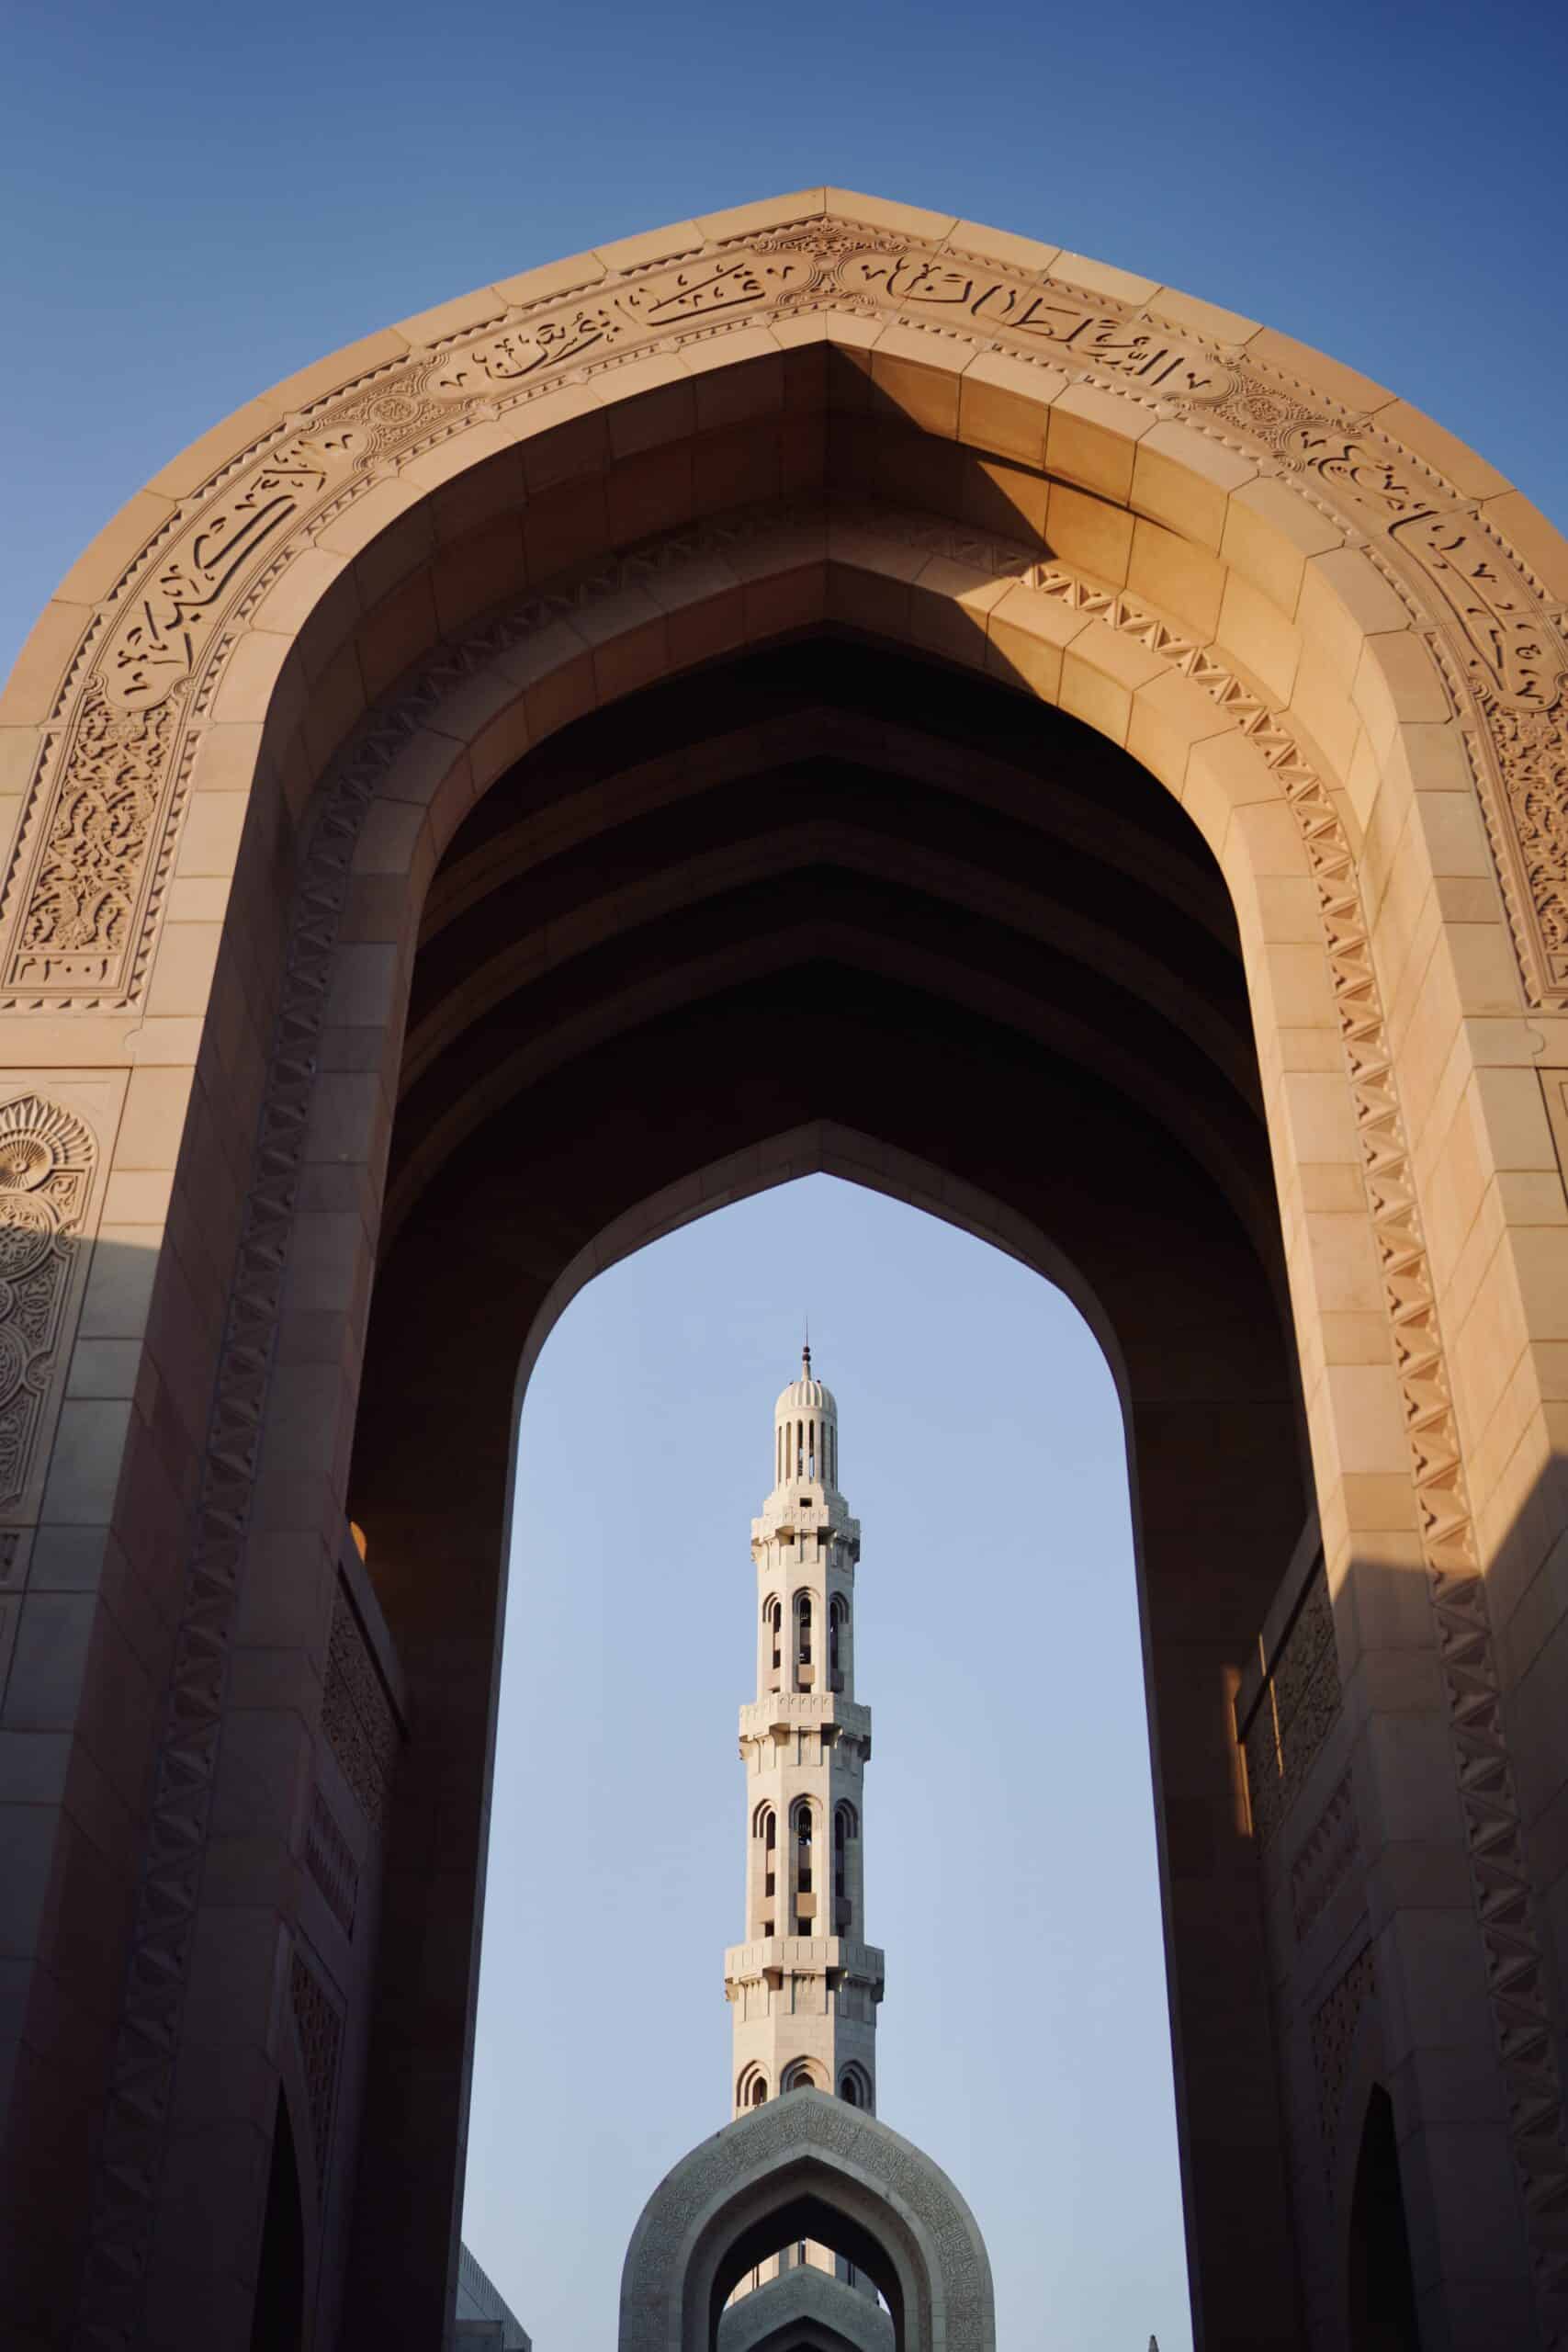 Sultan Qaboos Mosque in Oman